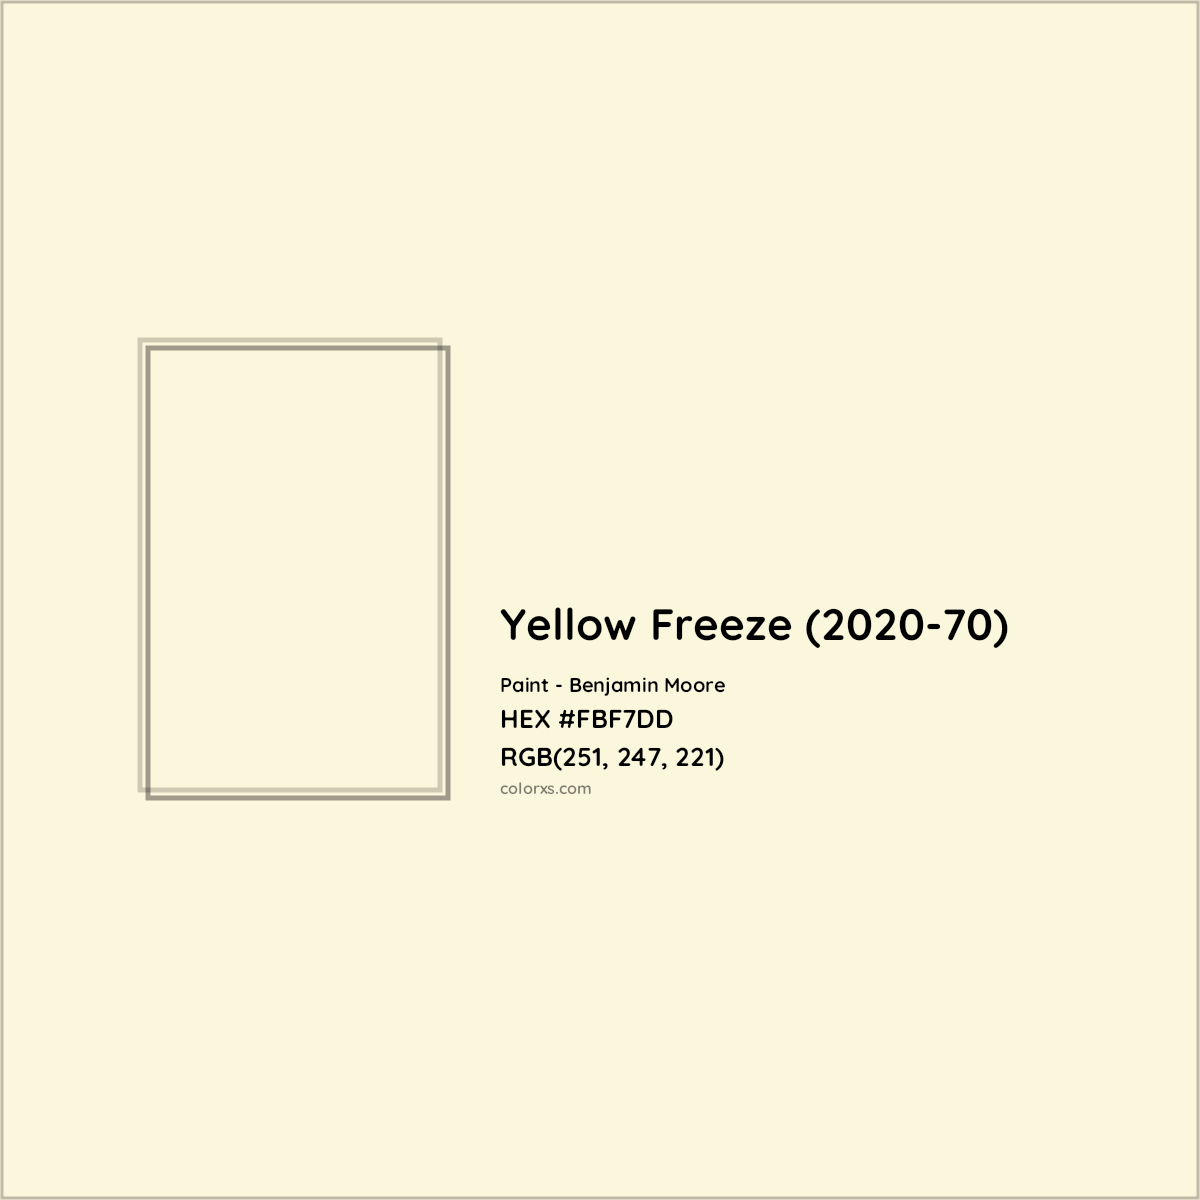 HEX #FBF7DD Yellow Freeze (2020-70) Paint Benjamin Moore - Color Code